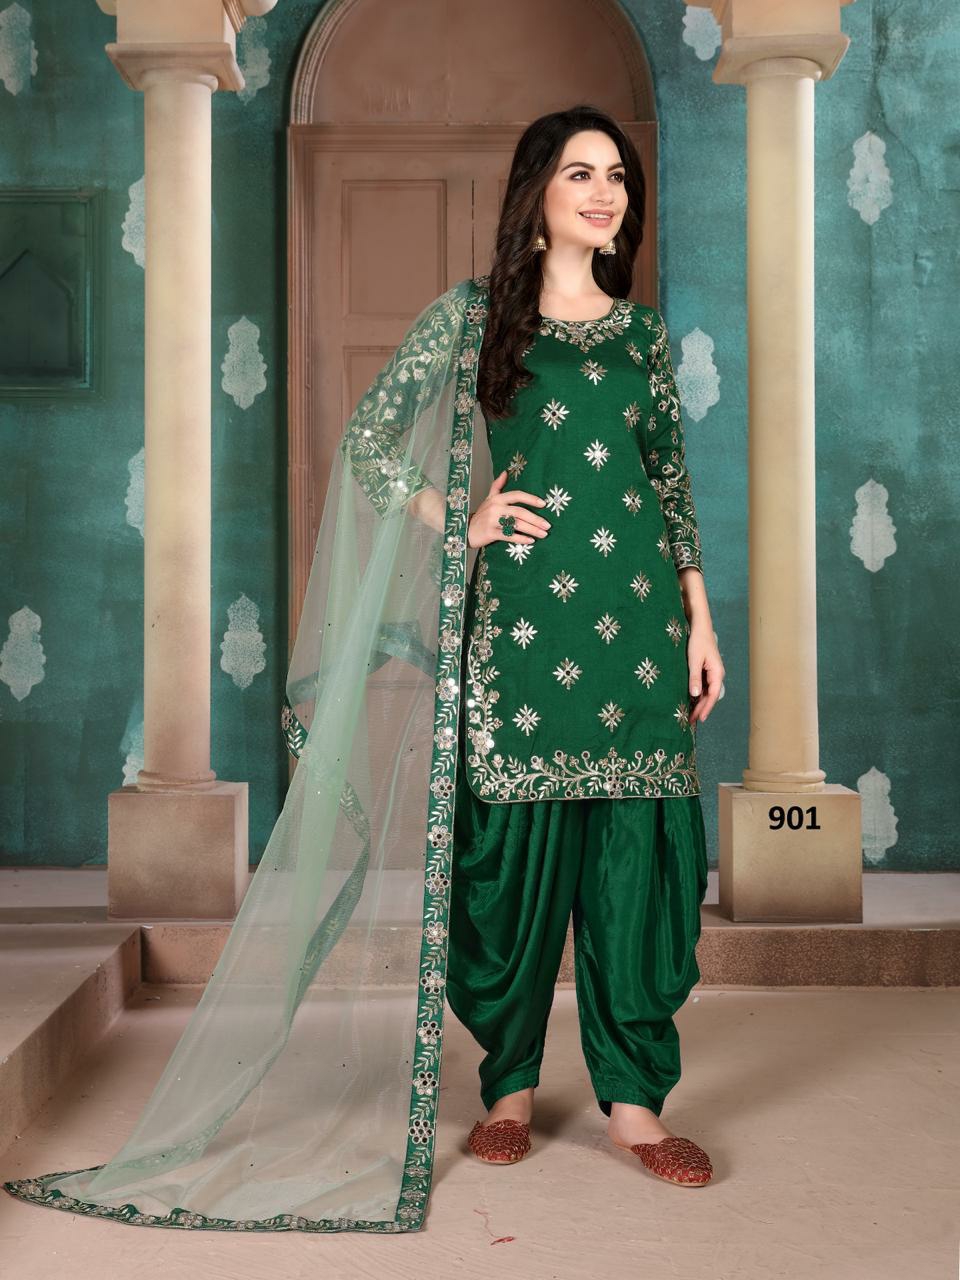 Twisha Presents Aanaya Vol-109 Art Silk Designer Salwar Suit Wholesaler